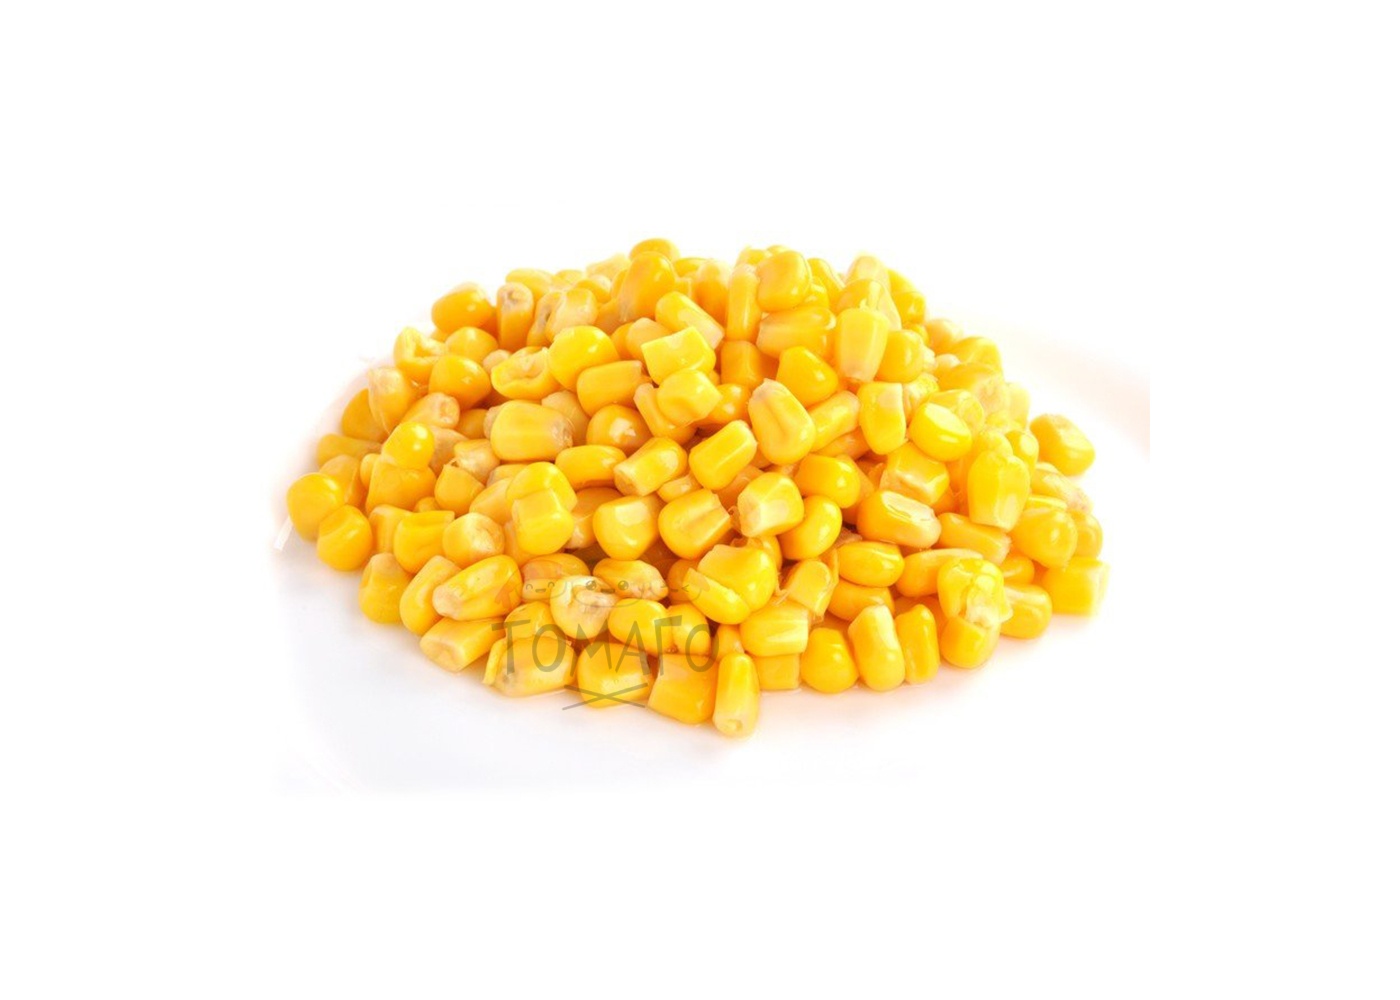 Corn note. Кукуруза (зерно). Зернышко кукурузы. Кукуруза россыпью. Кукуруза на белом фоне.